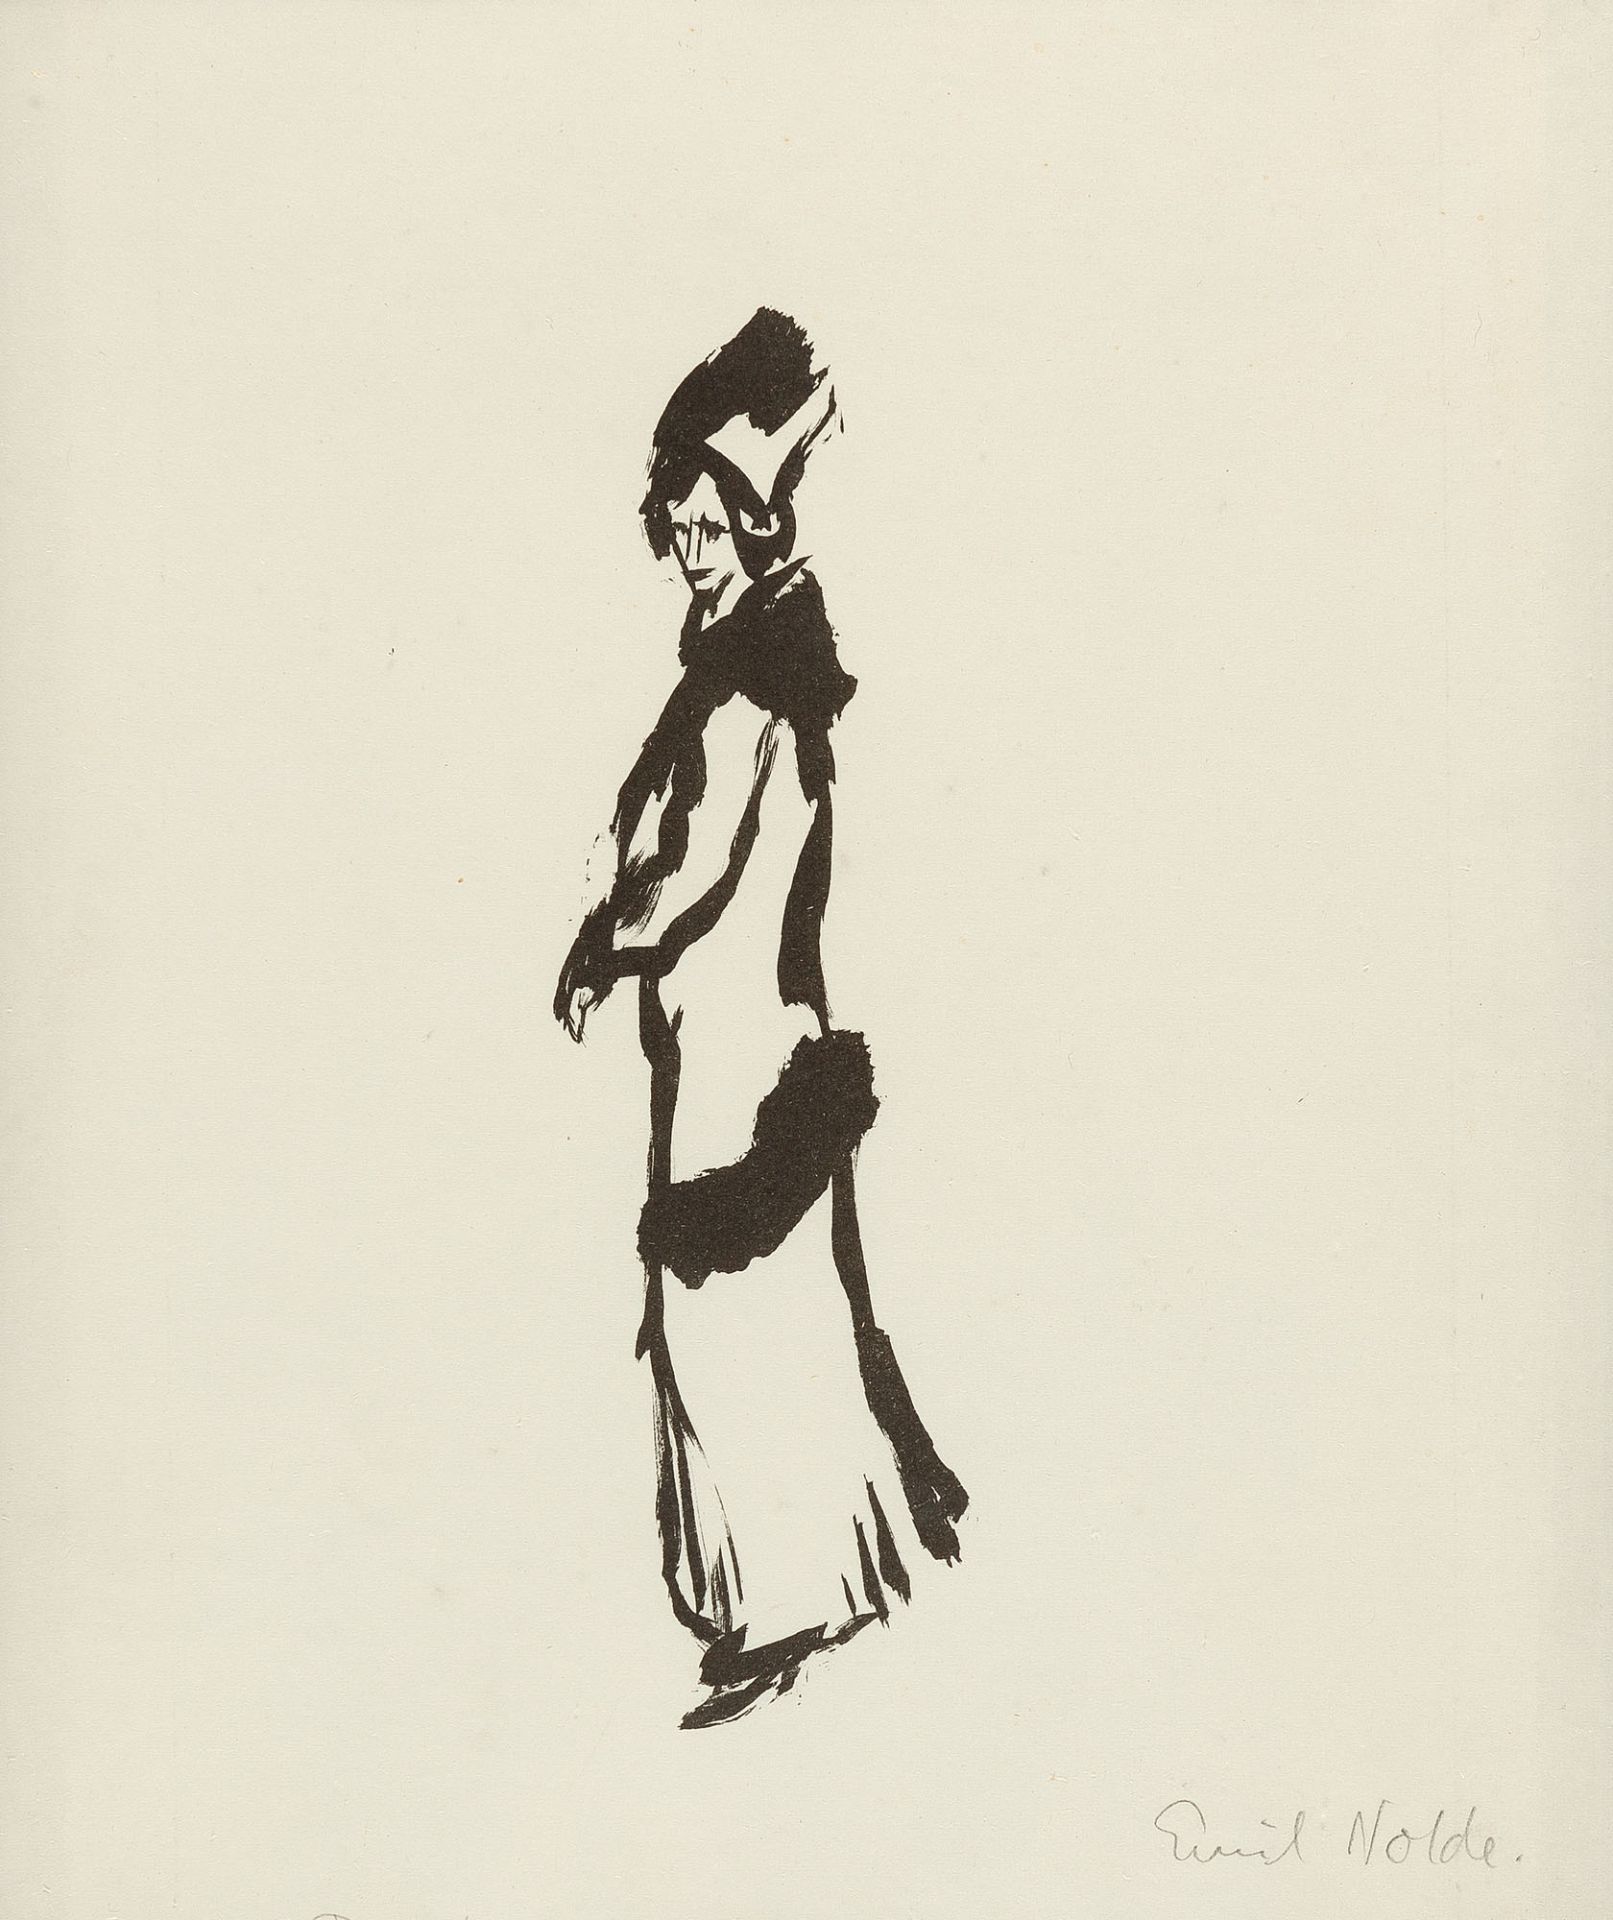 EMIL NOLDE
1867 Nolde - Seebüll 1956

Stehende Frau (klein).
1911
Lithographie auf Velin. (1911).